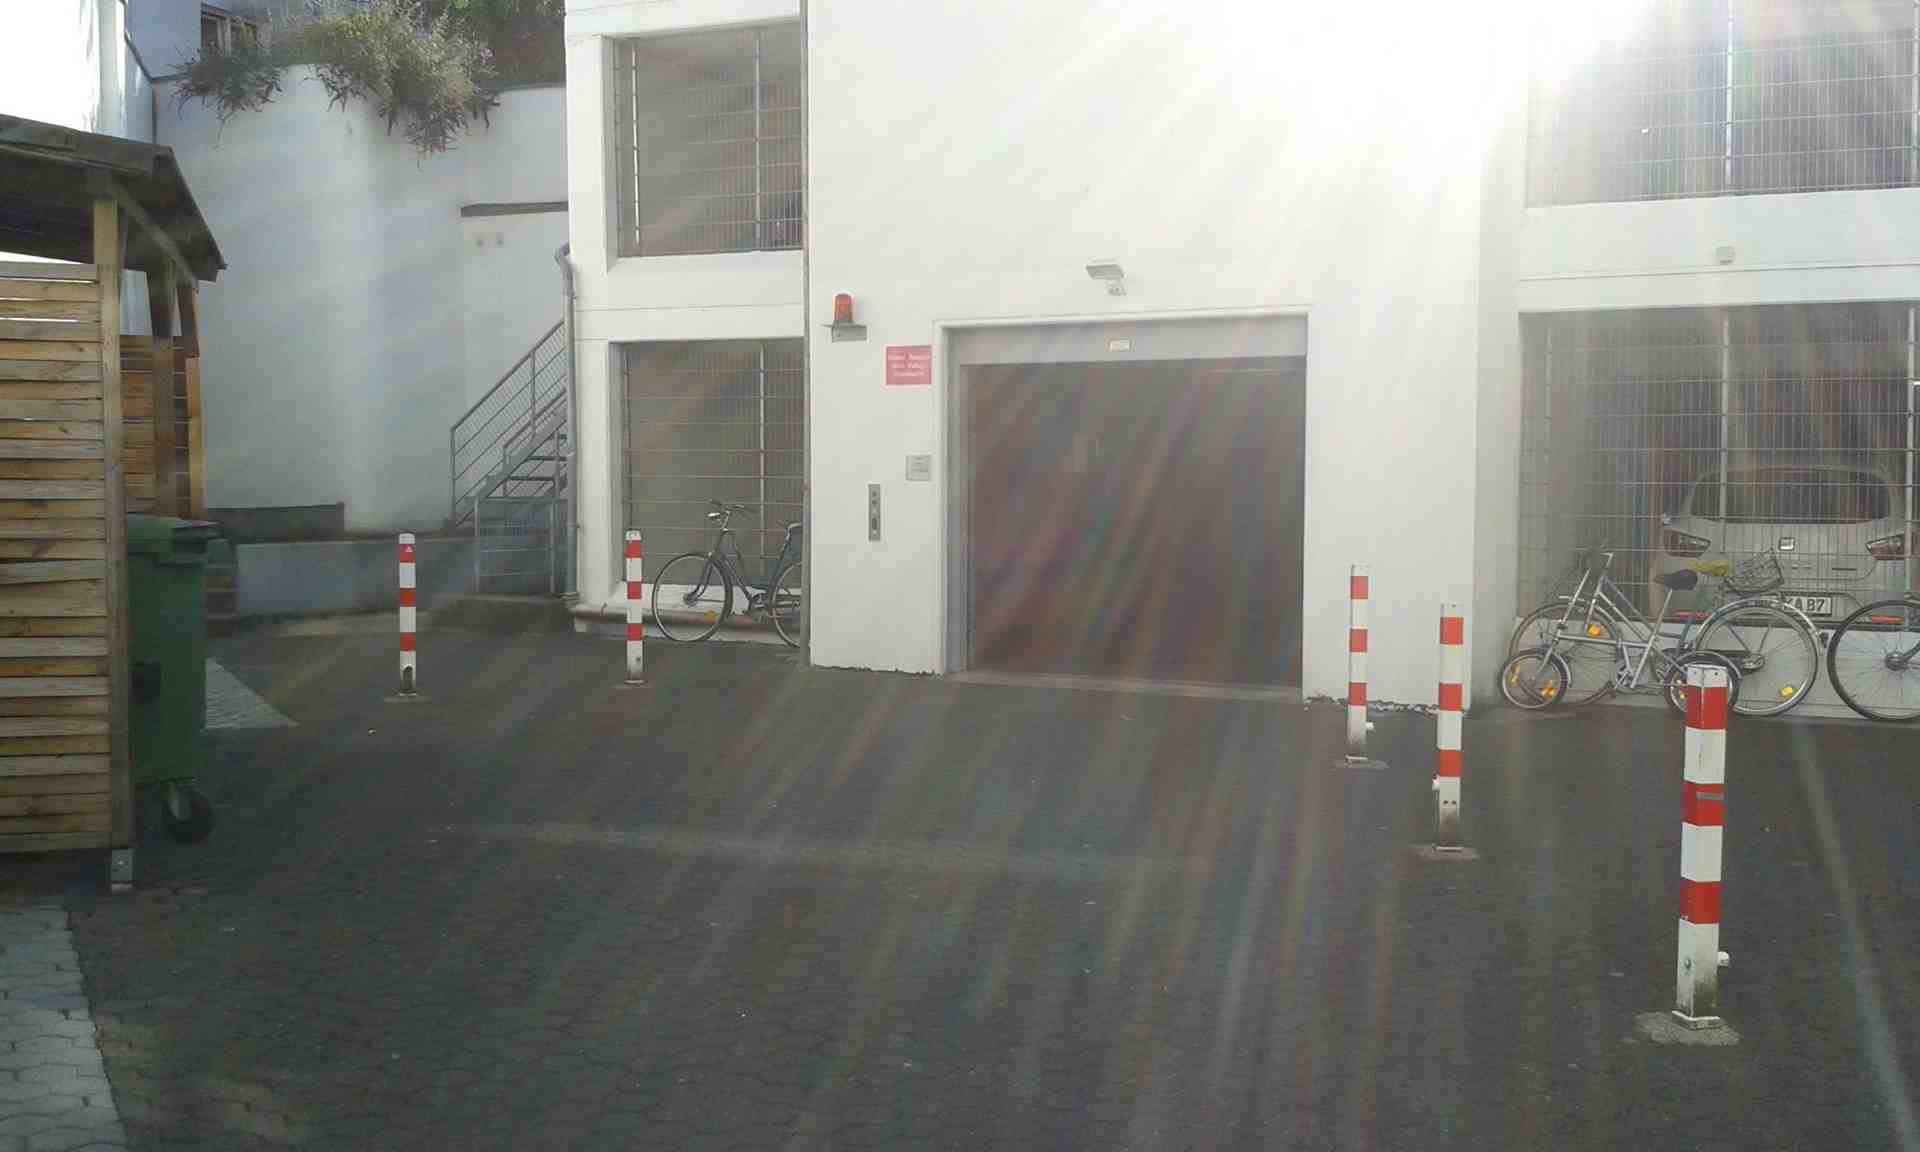 Stellplatz/Garage im UG in Kölner Innenstadt (Zülpi/Barba) - Mauritiuswall, 50676 Cologne - Photo 1 of 3